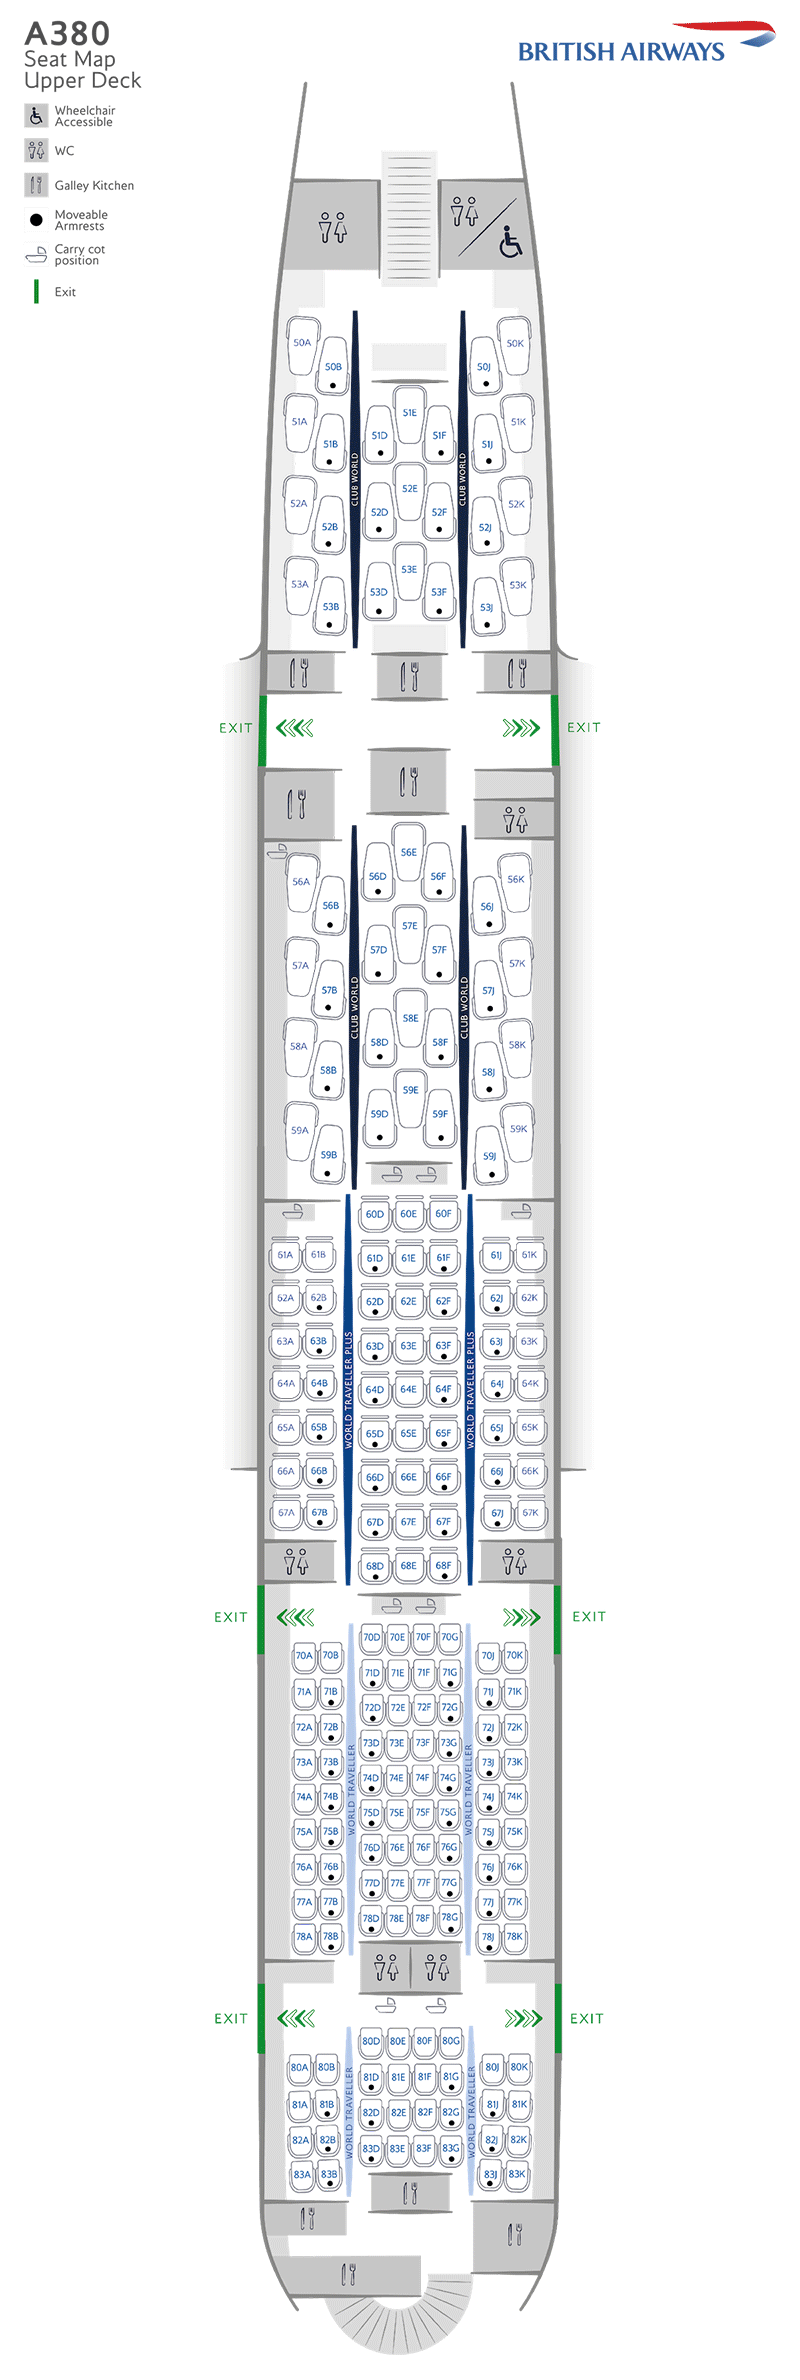 A380-800 upper deck seatmap